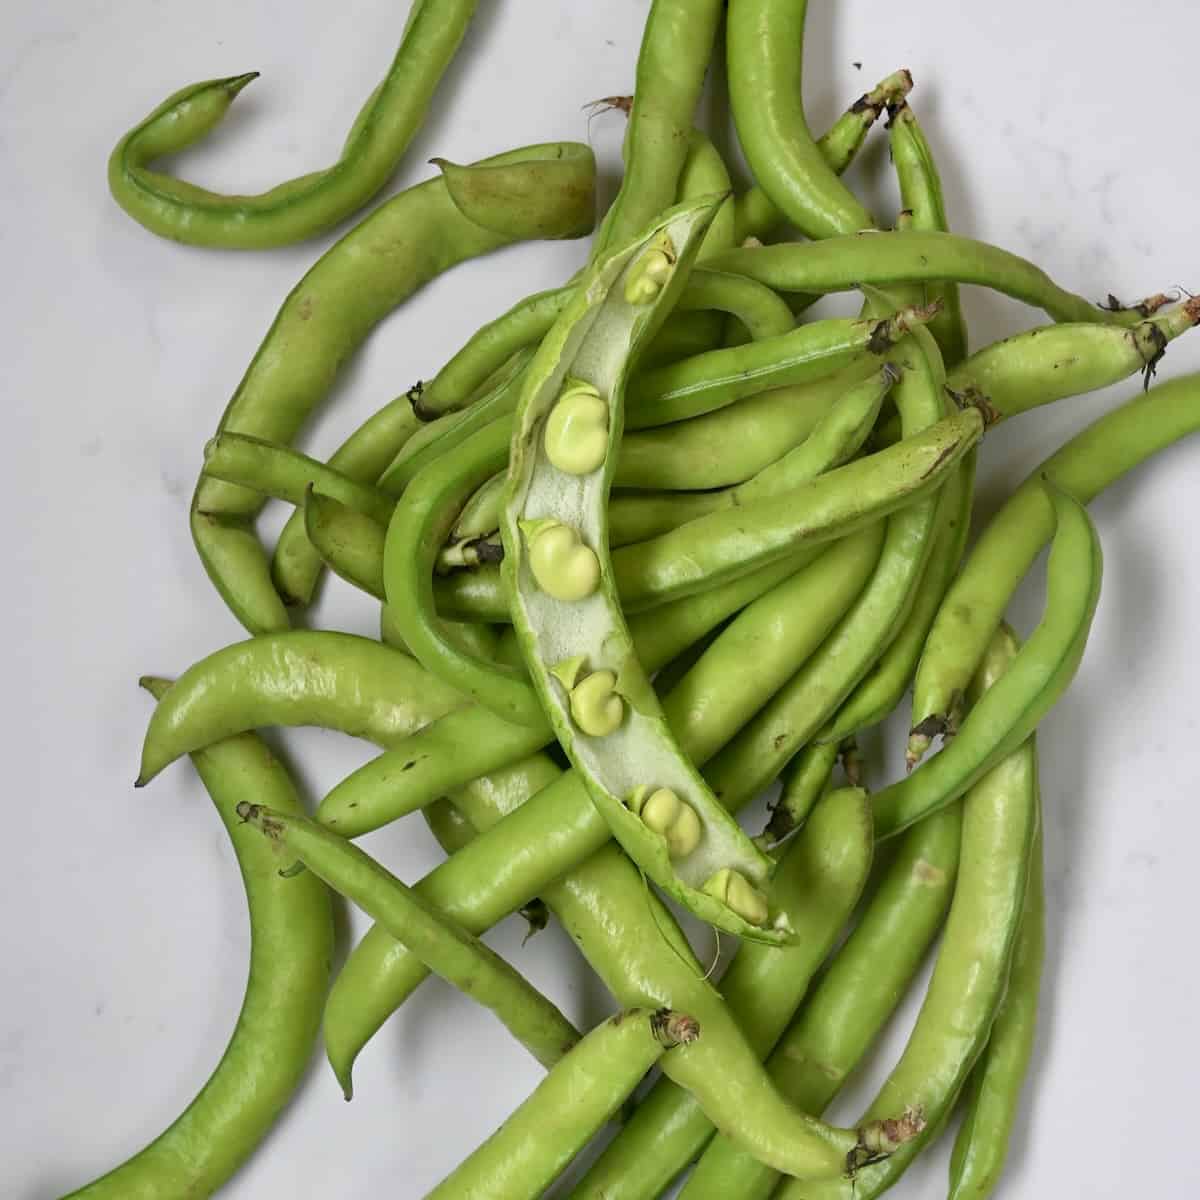 A bunch of fava beans